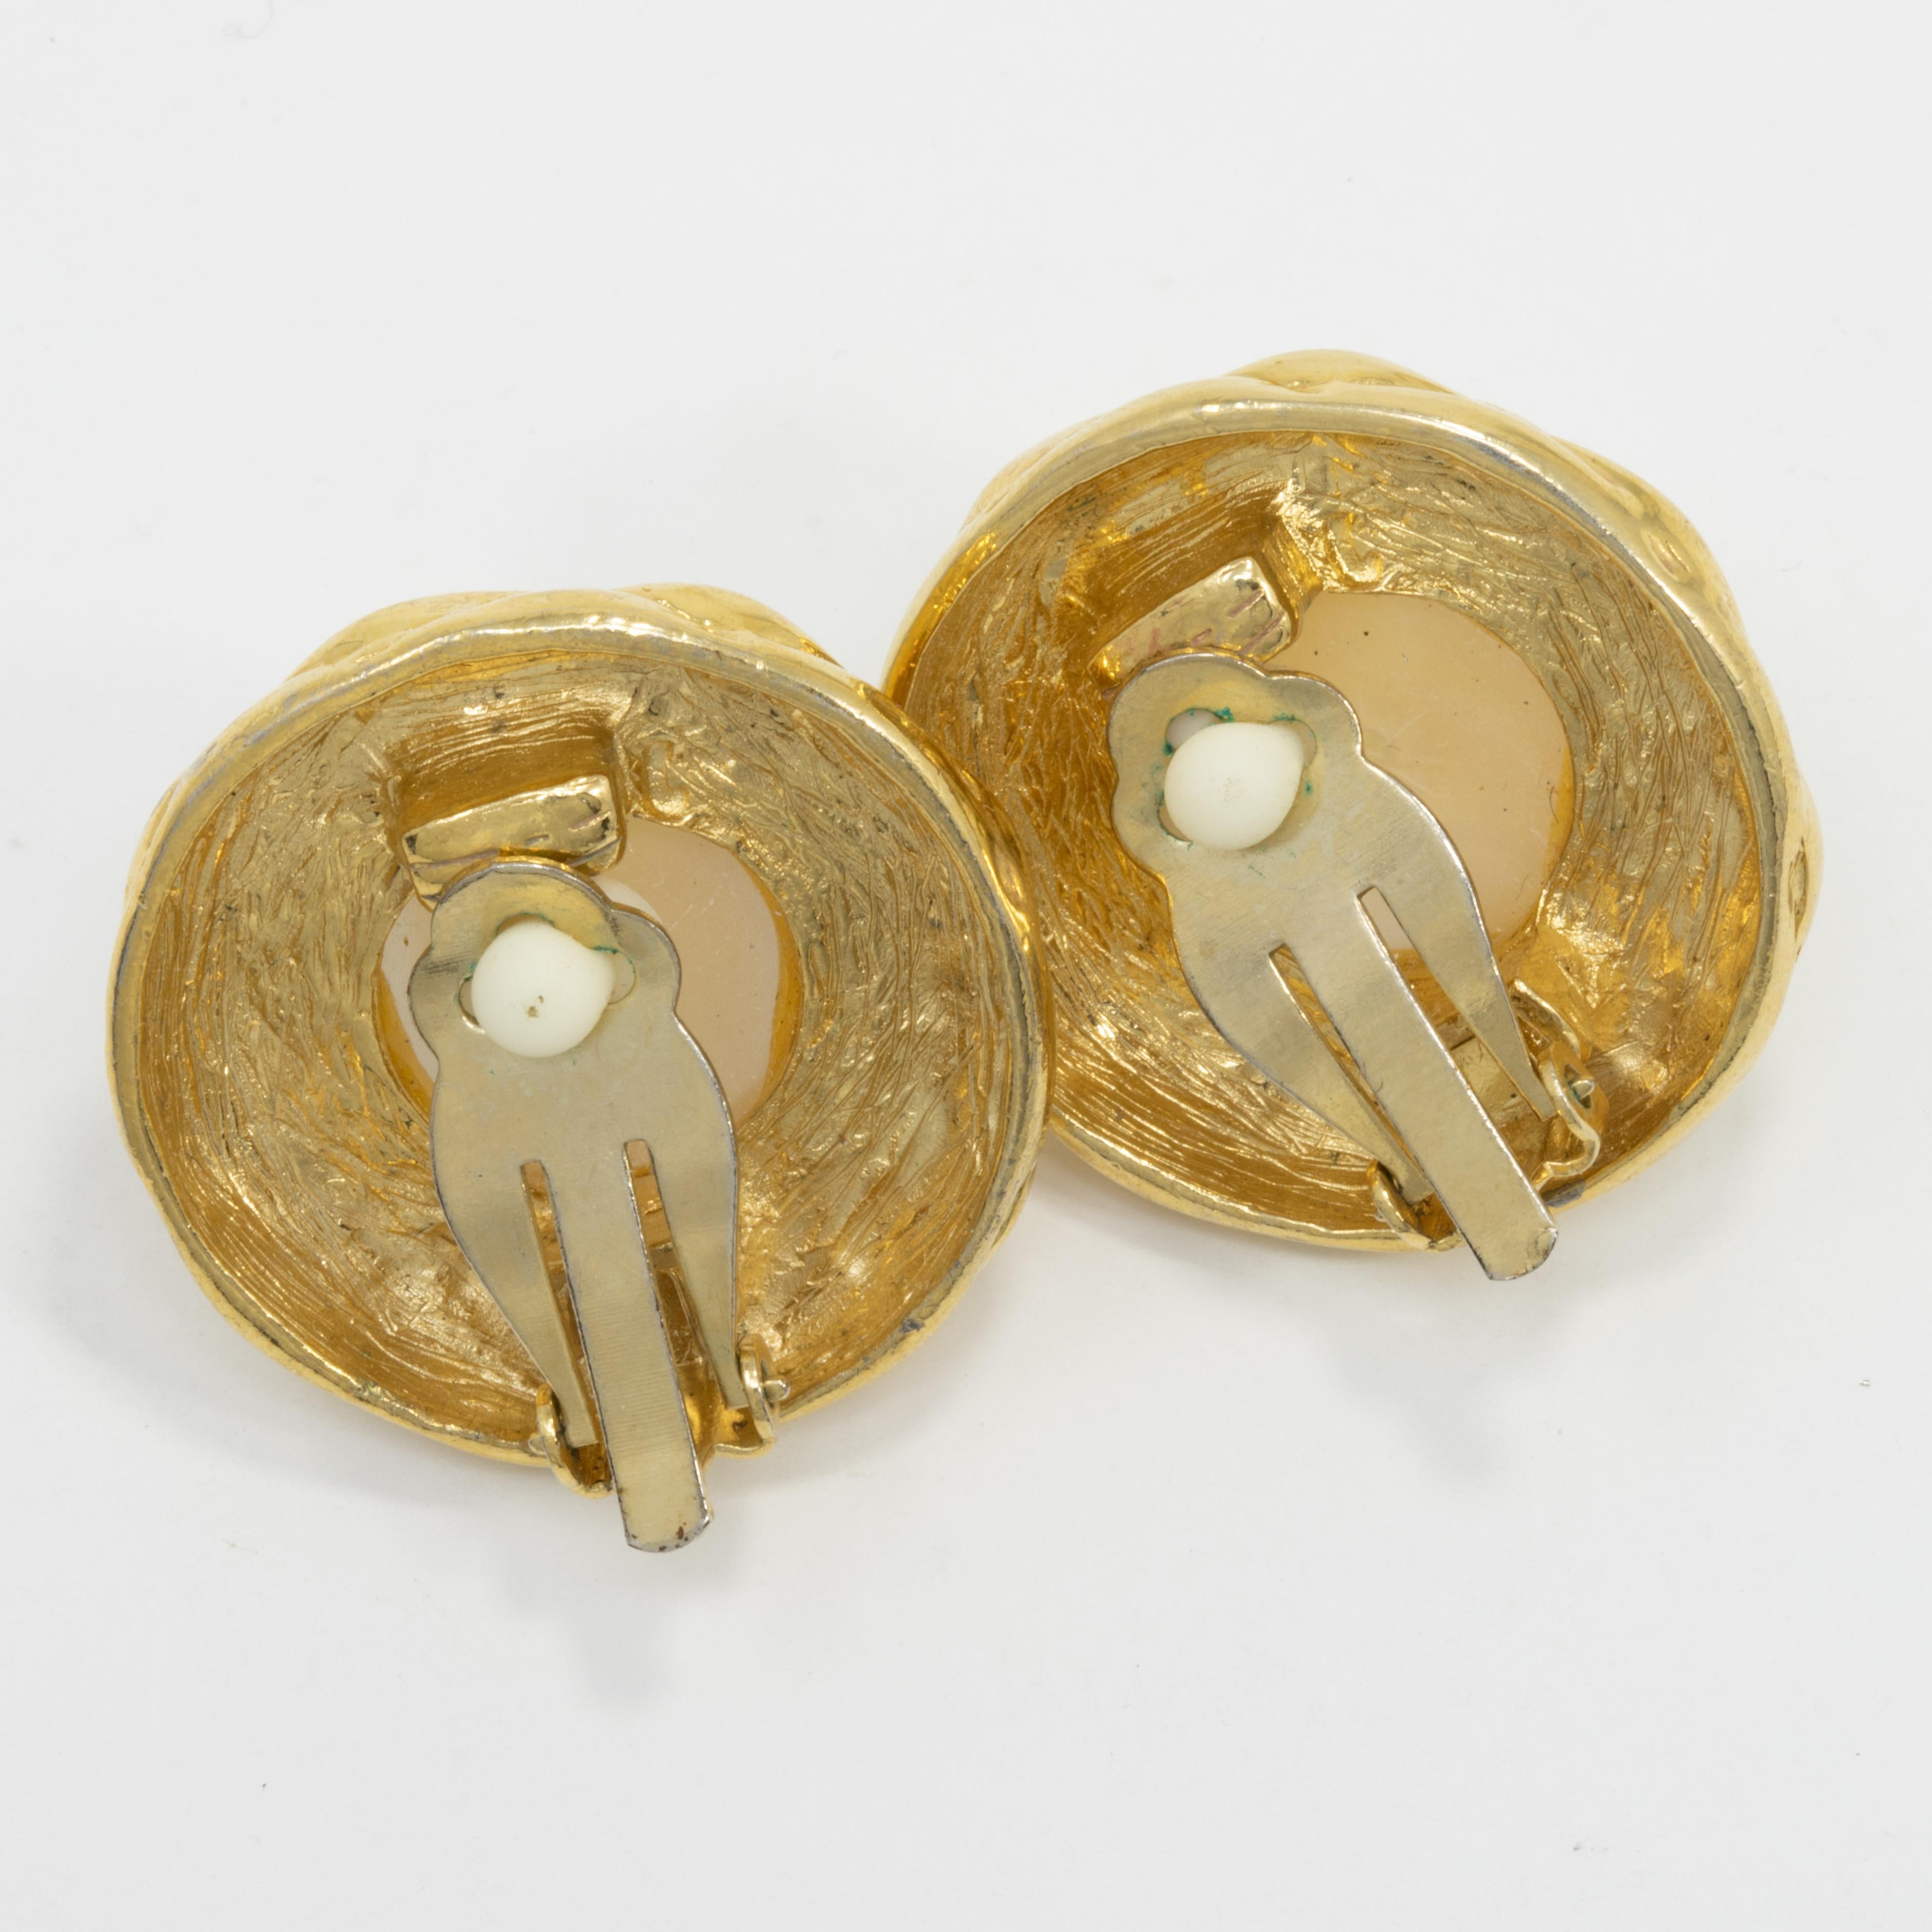 Luxuriöse Ohrringe mit einer auffälligen Kunstperle in der Mitte - ein perfekter Touch von Klasse!

Etwa Mitte bis Ende 1900.

Gold-Ton.
